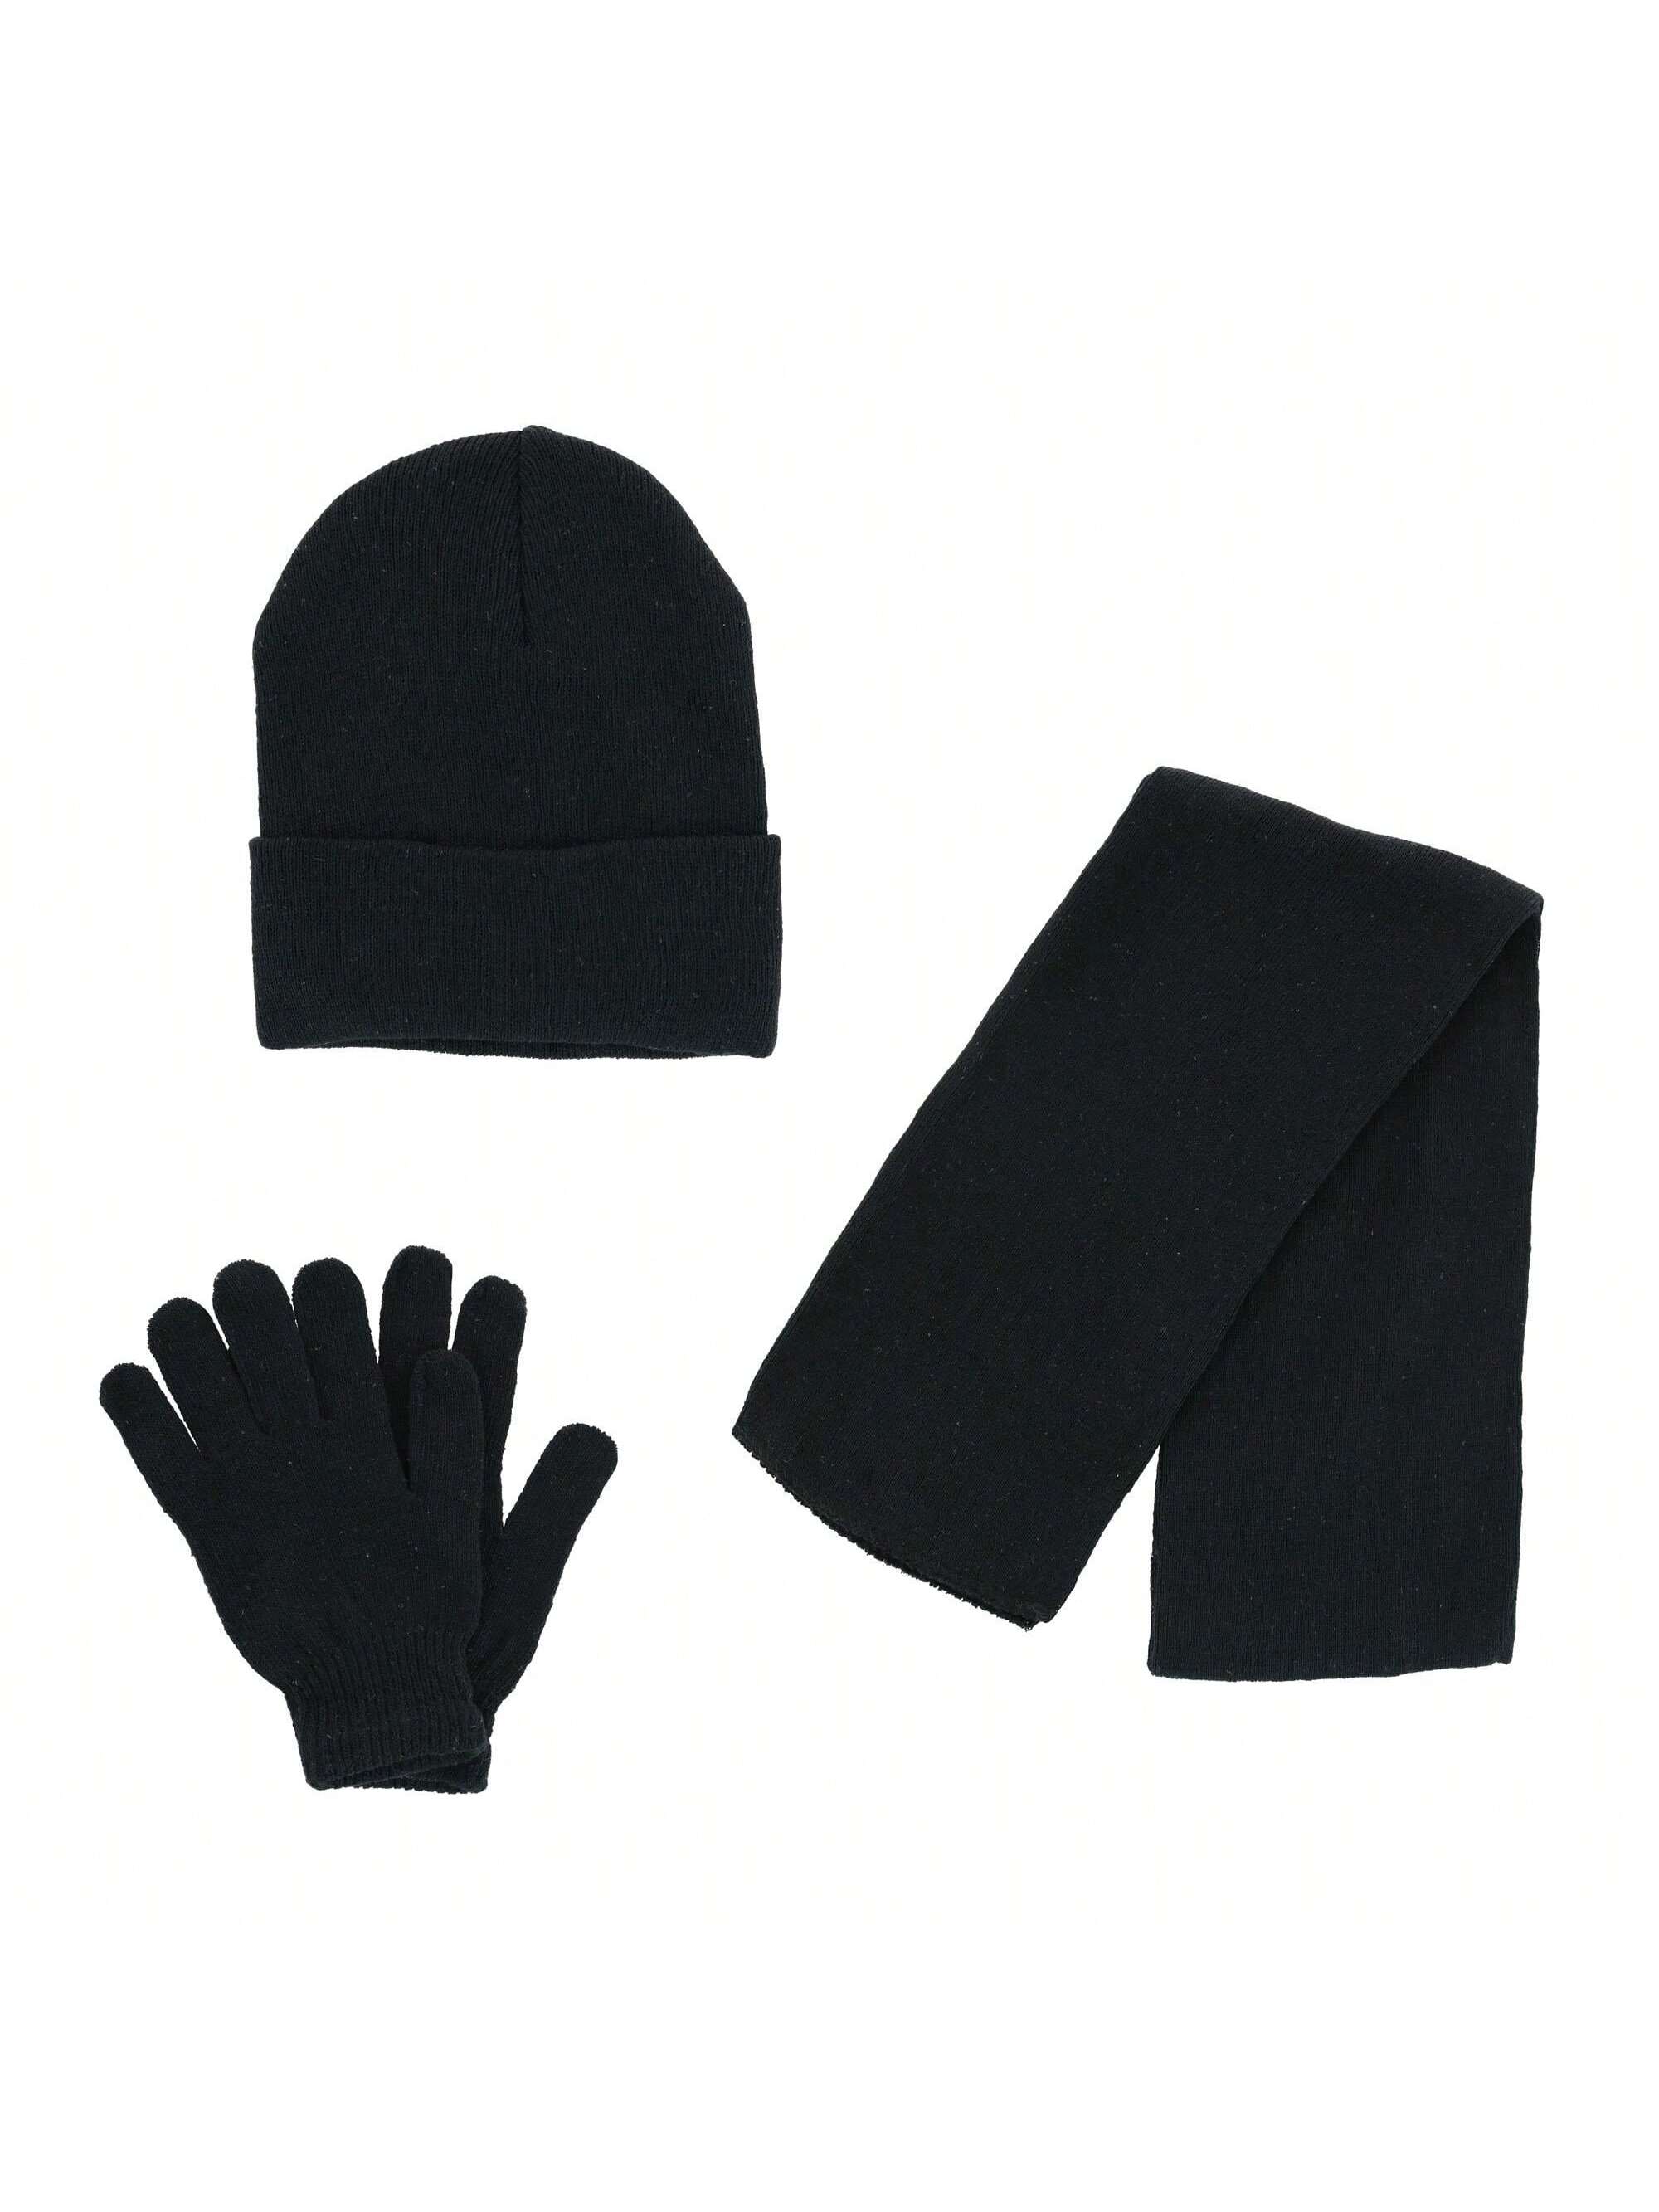 Базовая шапка-бини CTM, комплект из шарфа и перчаток, черный базовая шапка бини ctm комплект из шарфа и перчаток темно синий